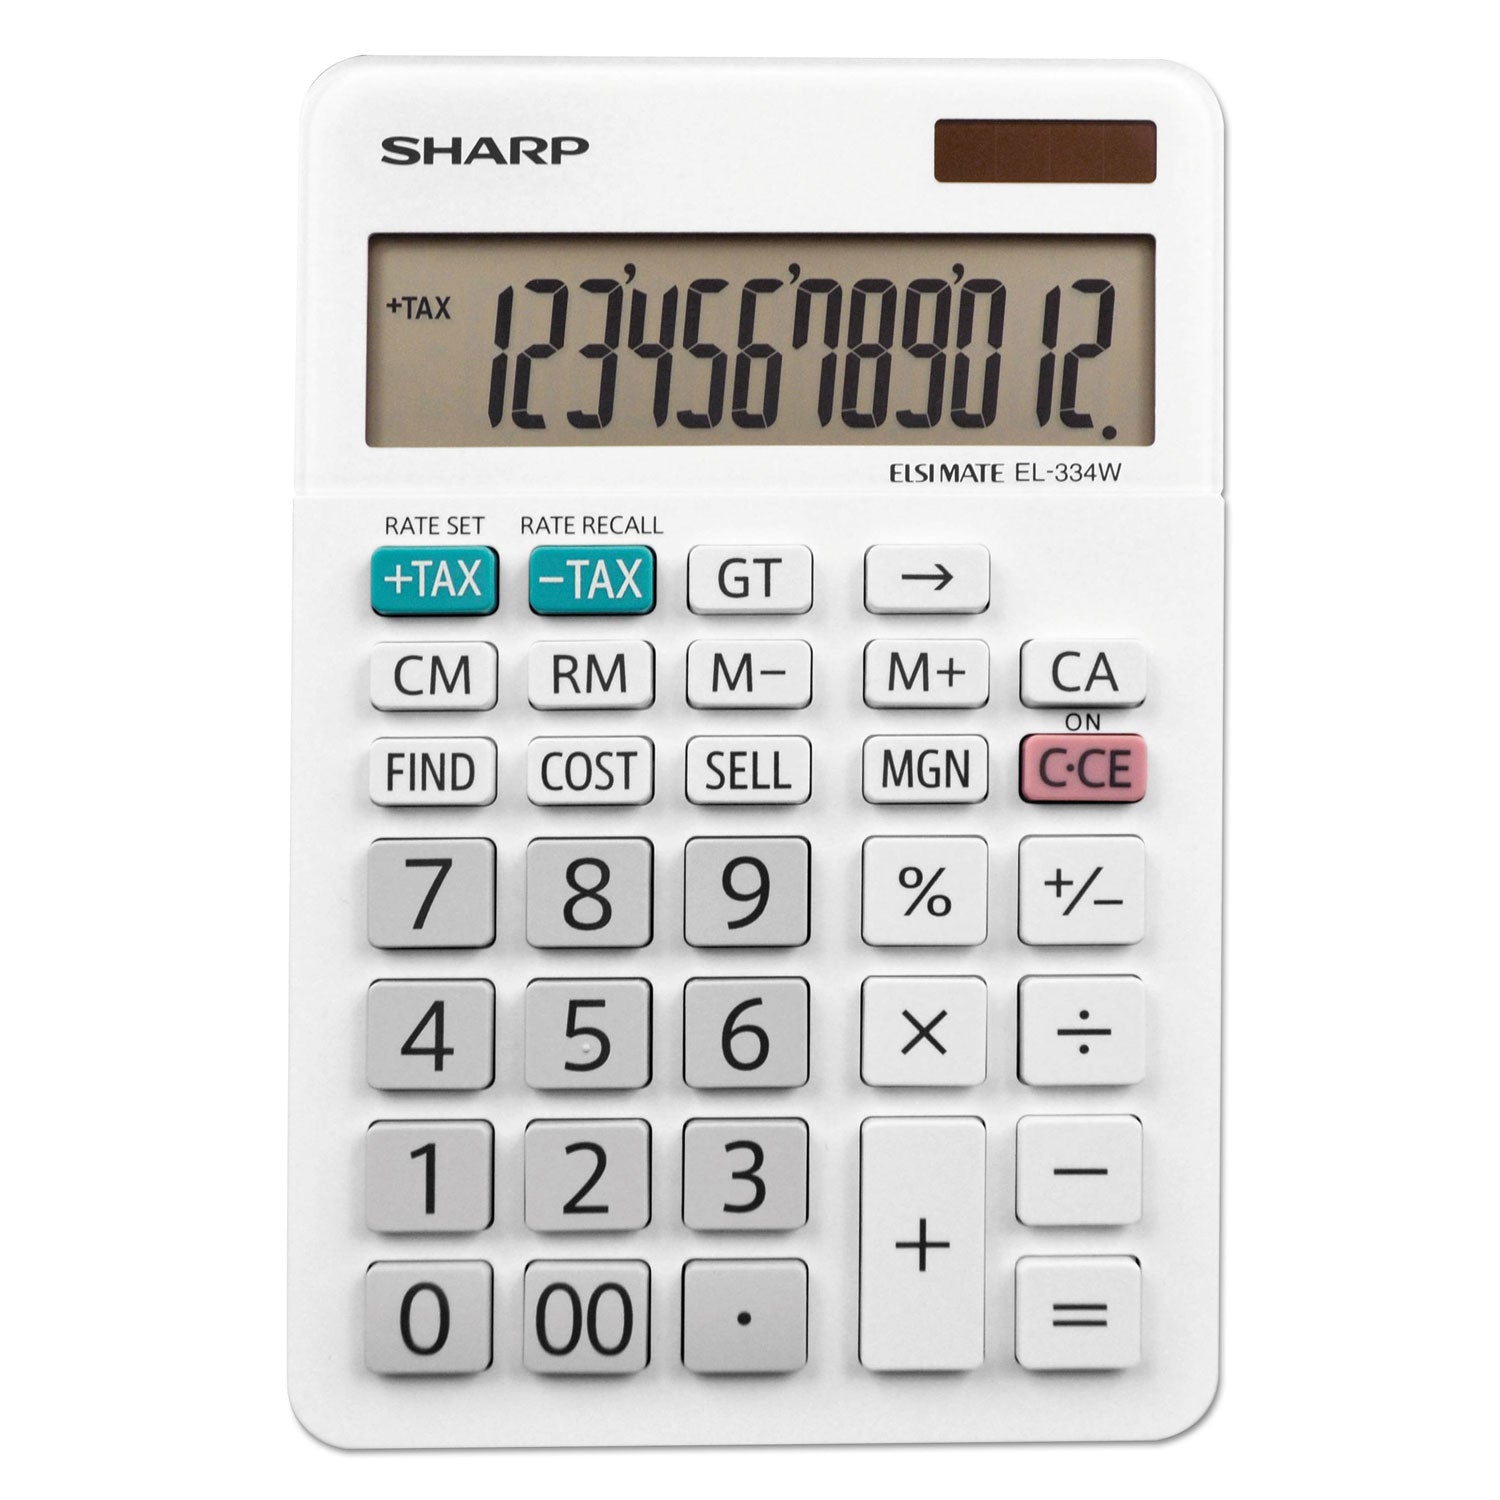 el-334w-large-desktop-calculator-12-digit-lcd_shrel334w - 1